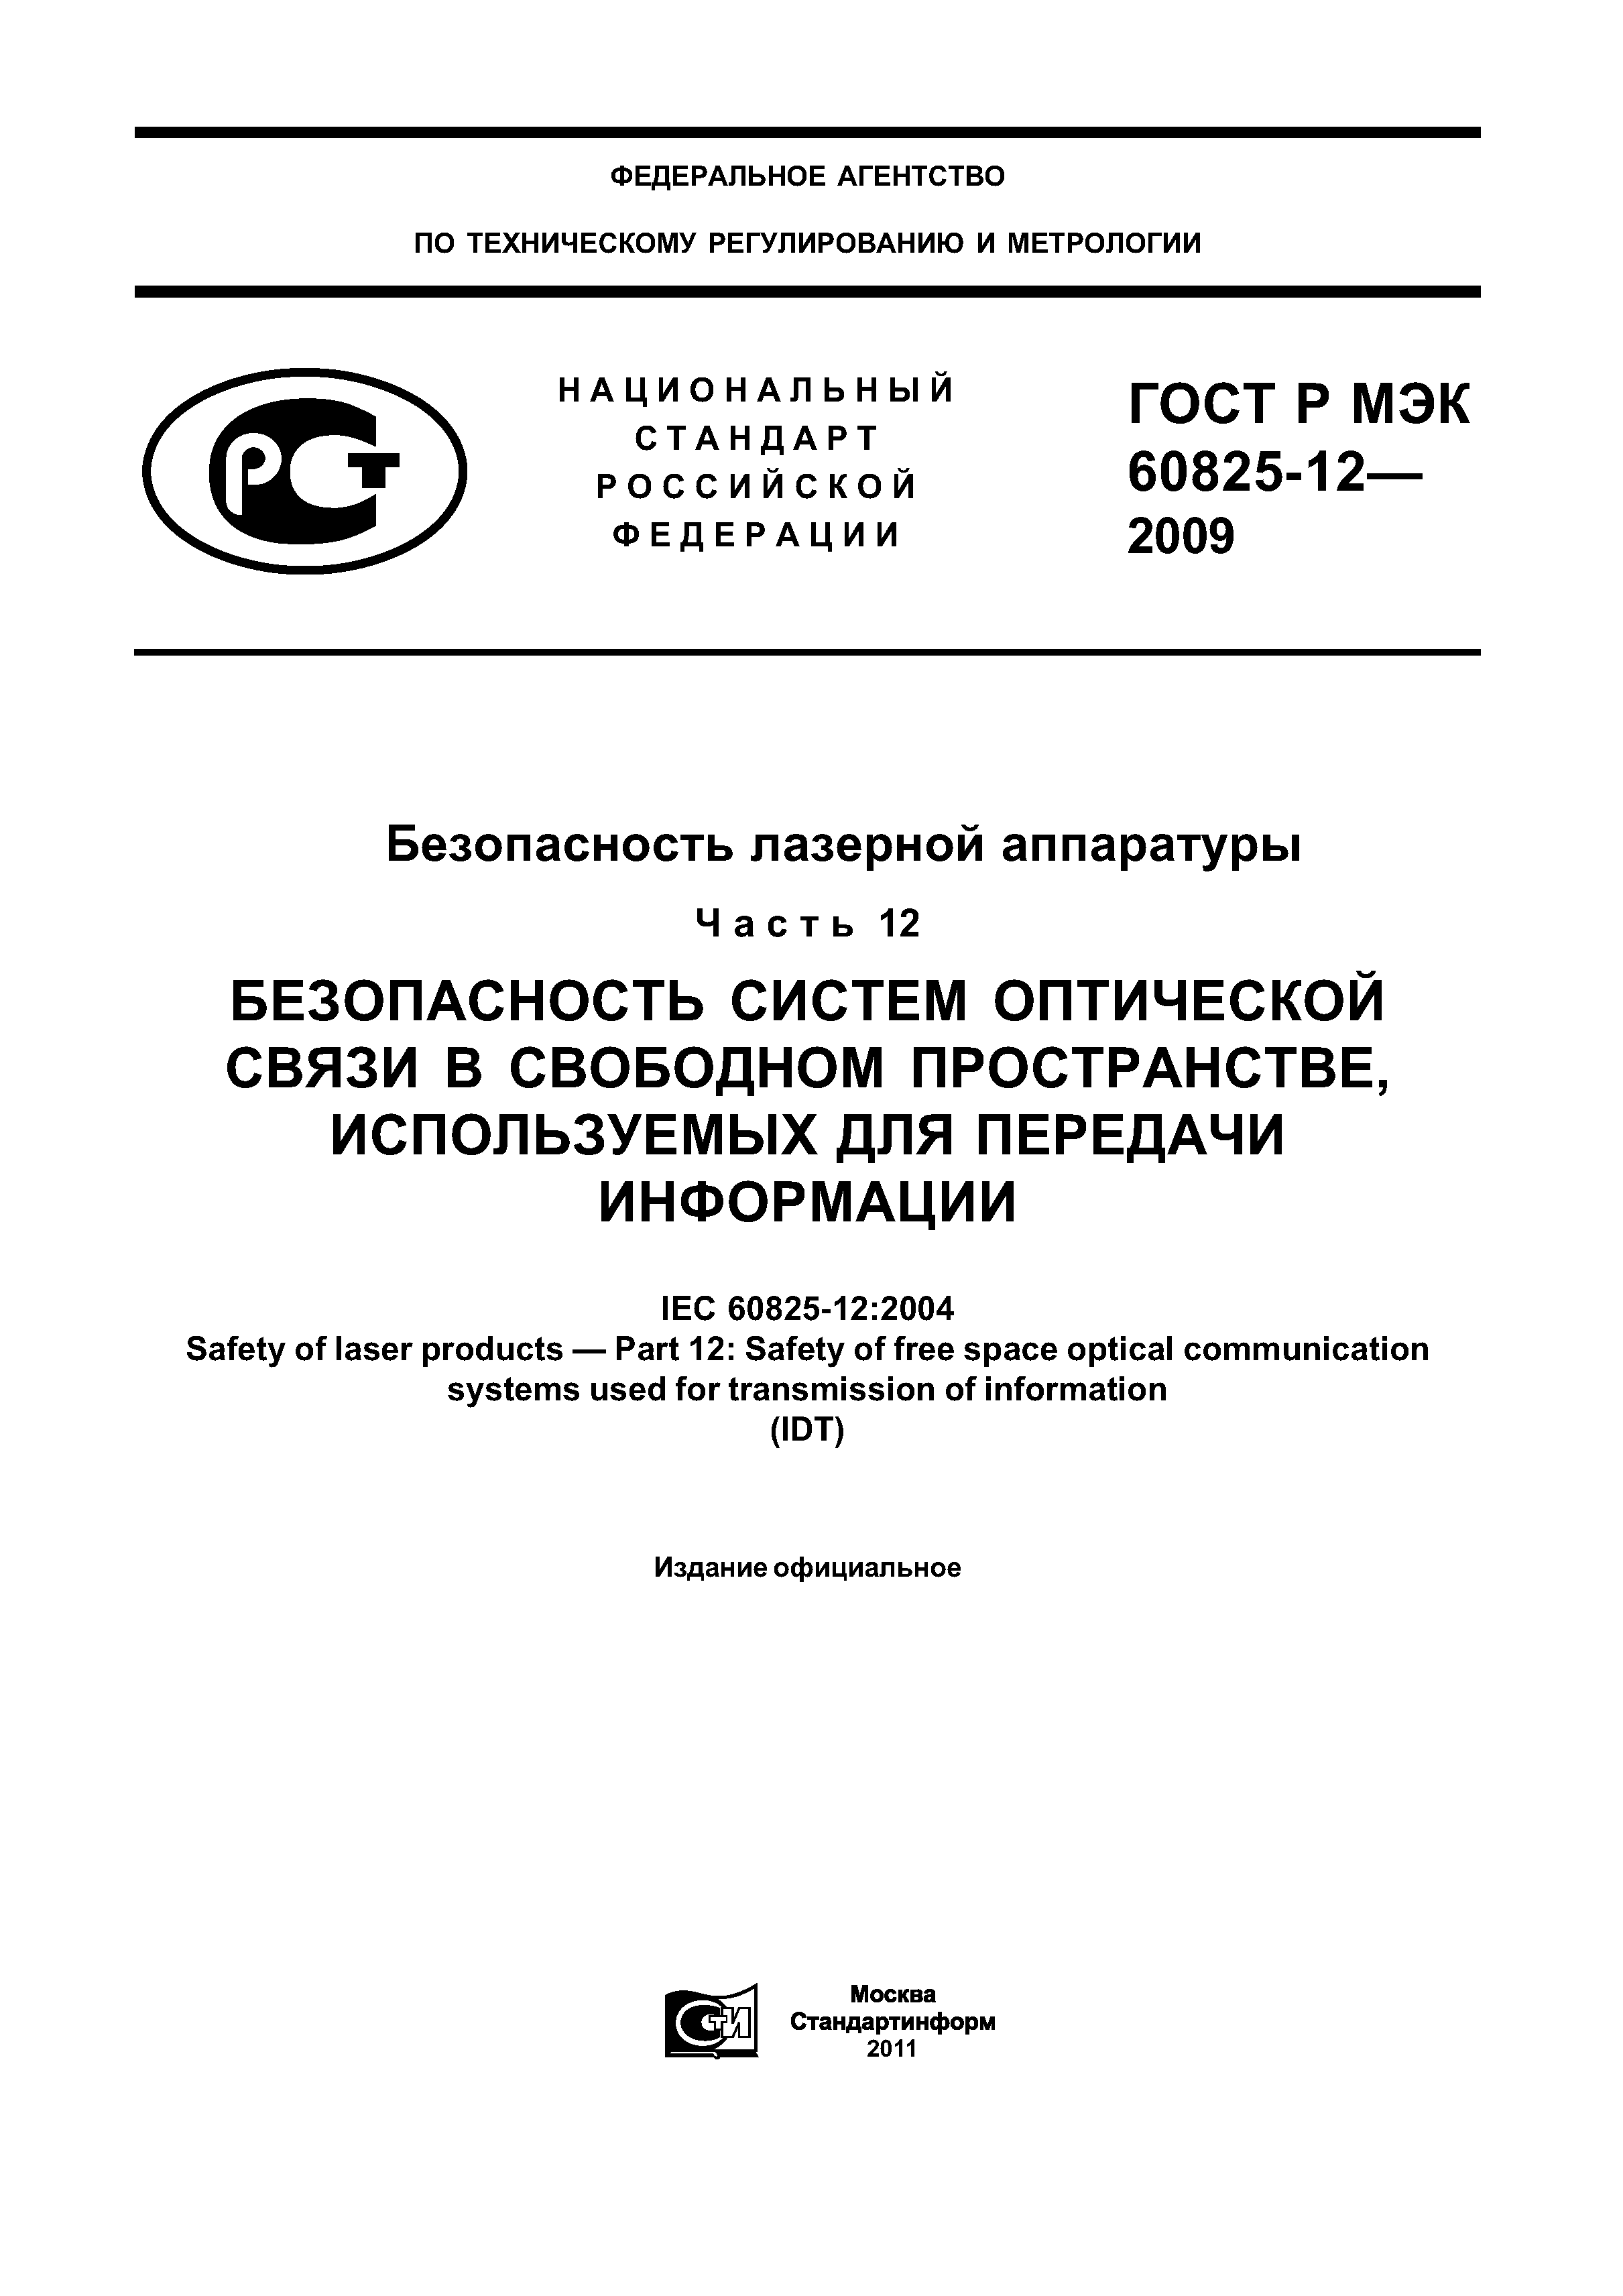 ГОСТ Р МЭК 60825-12-2009